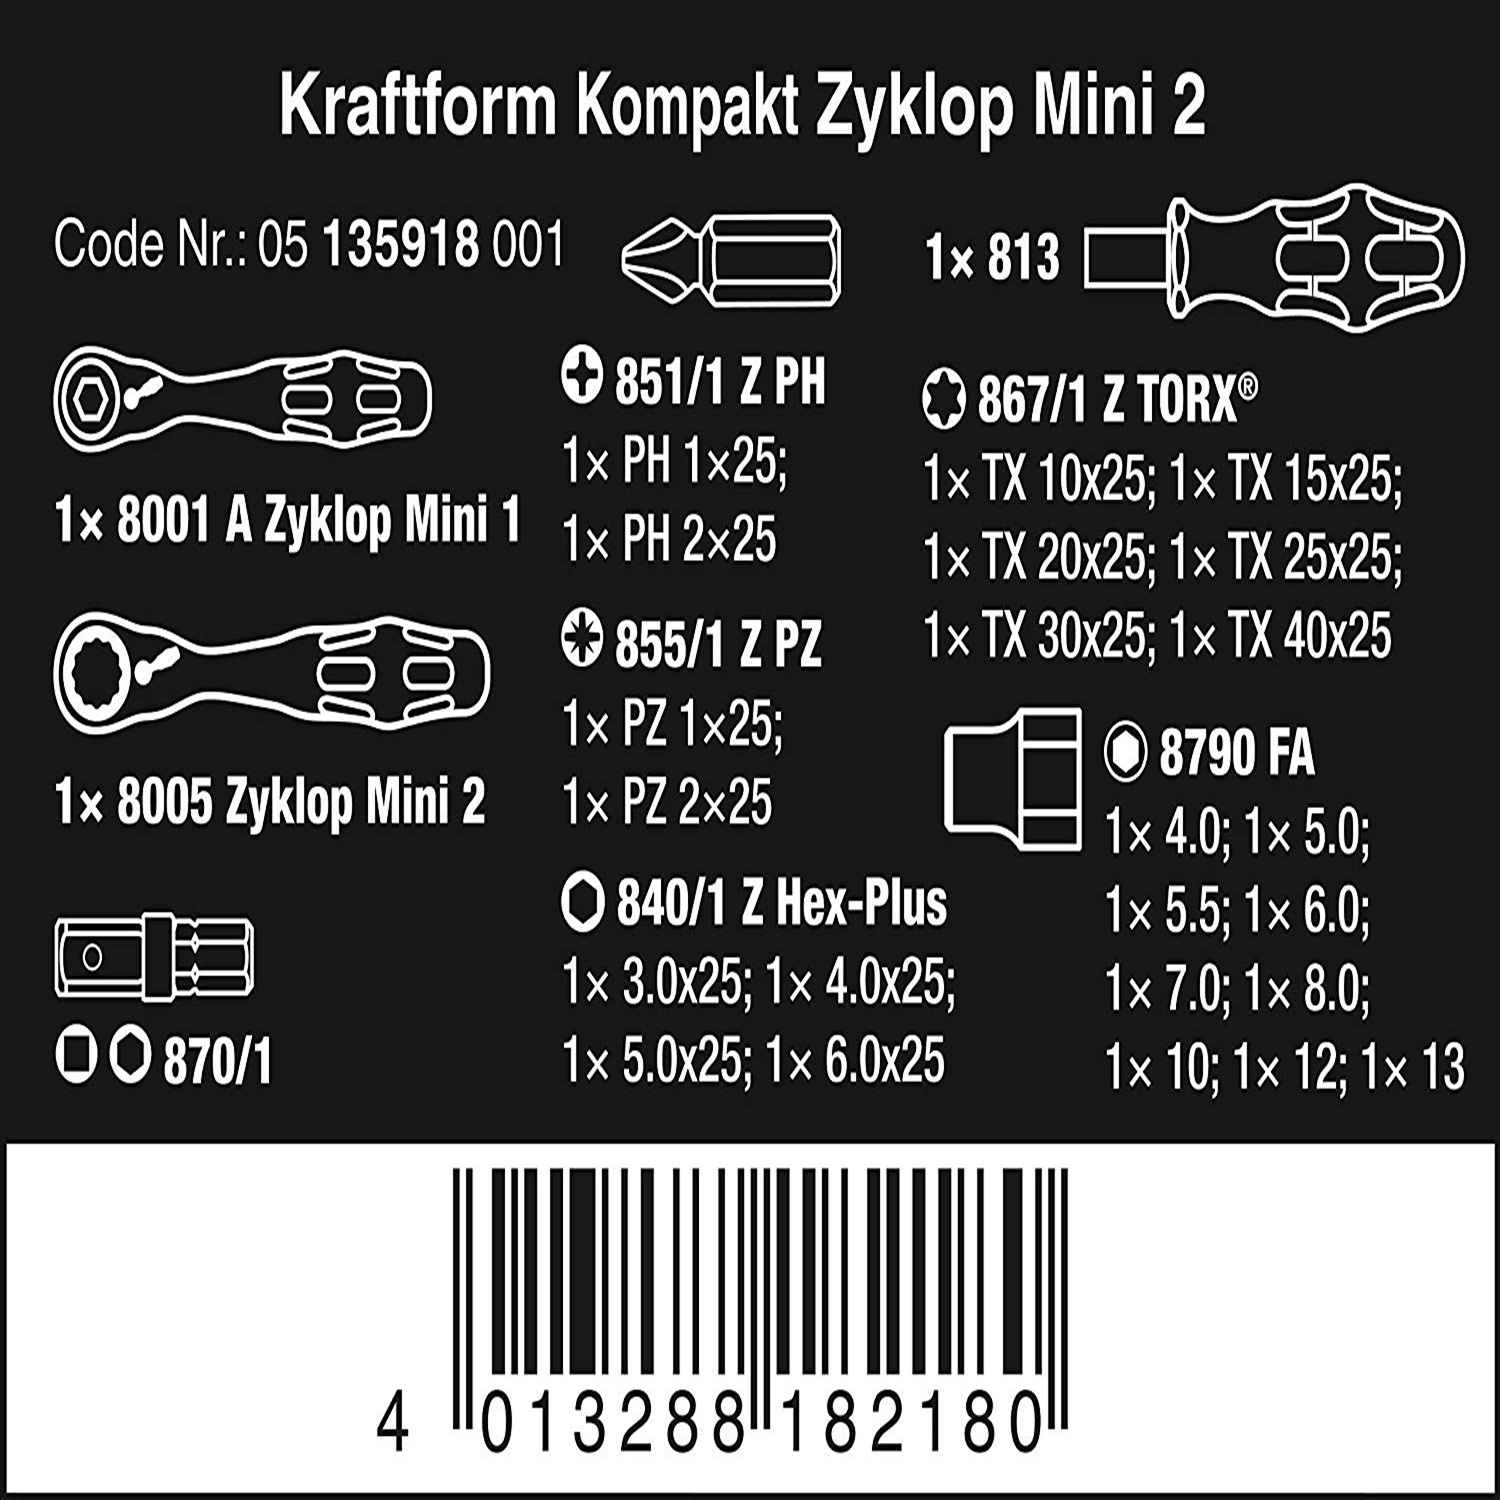 Bộ dụng cụ Kraftform Kompakt Zyklop Mini 2 Wera 05135918001